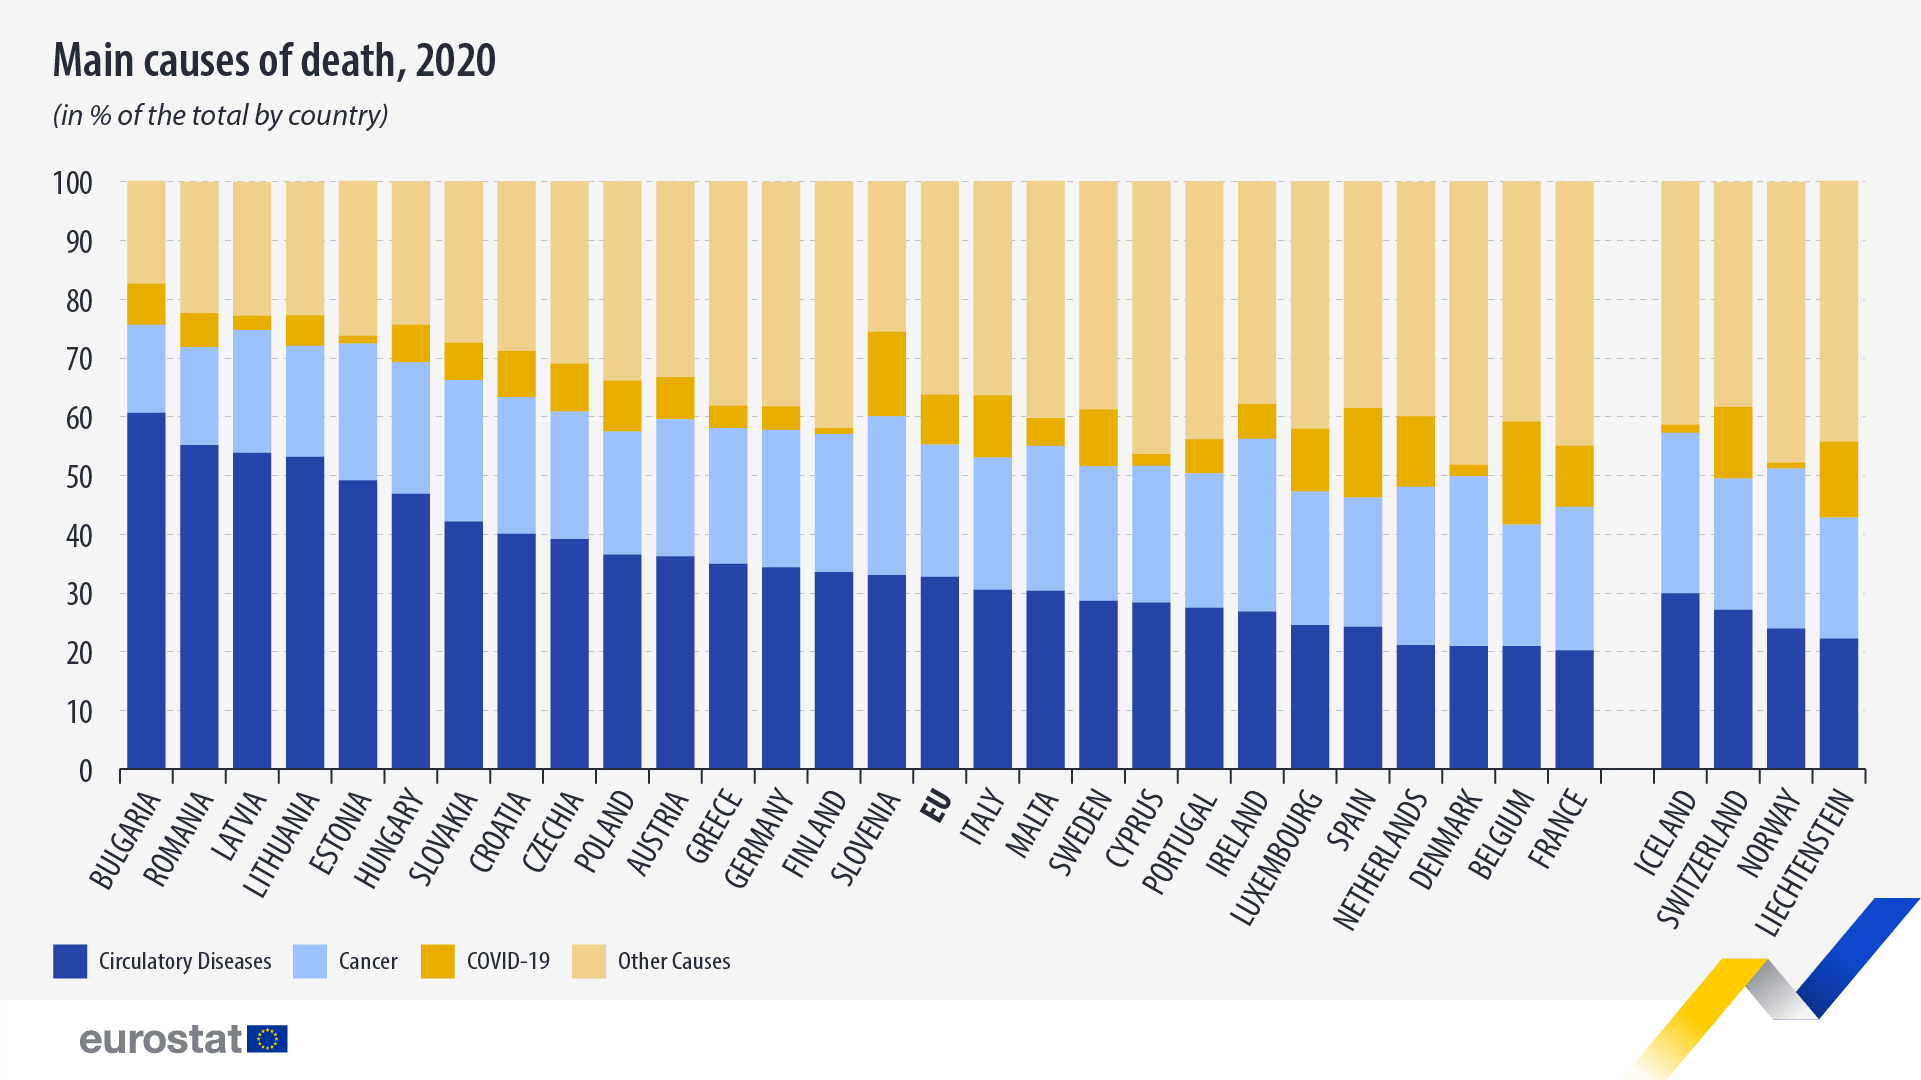 Διάγραμμα ράβδων: κύριες αιτίες θανάτου στην ΕΕ, χώρες ΕΖΕΣ, 2020 (σε % του συνόλου ανά χώρα)